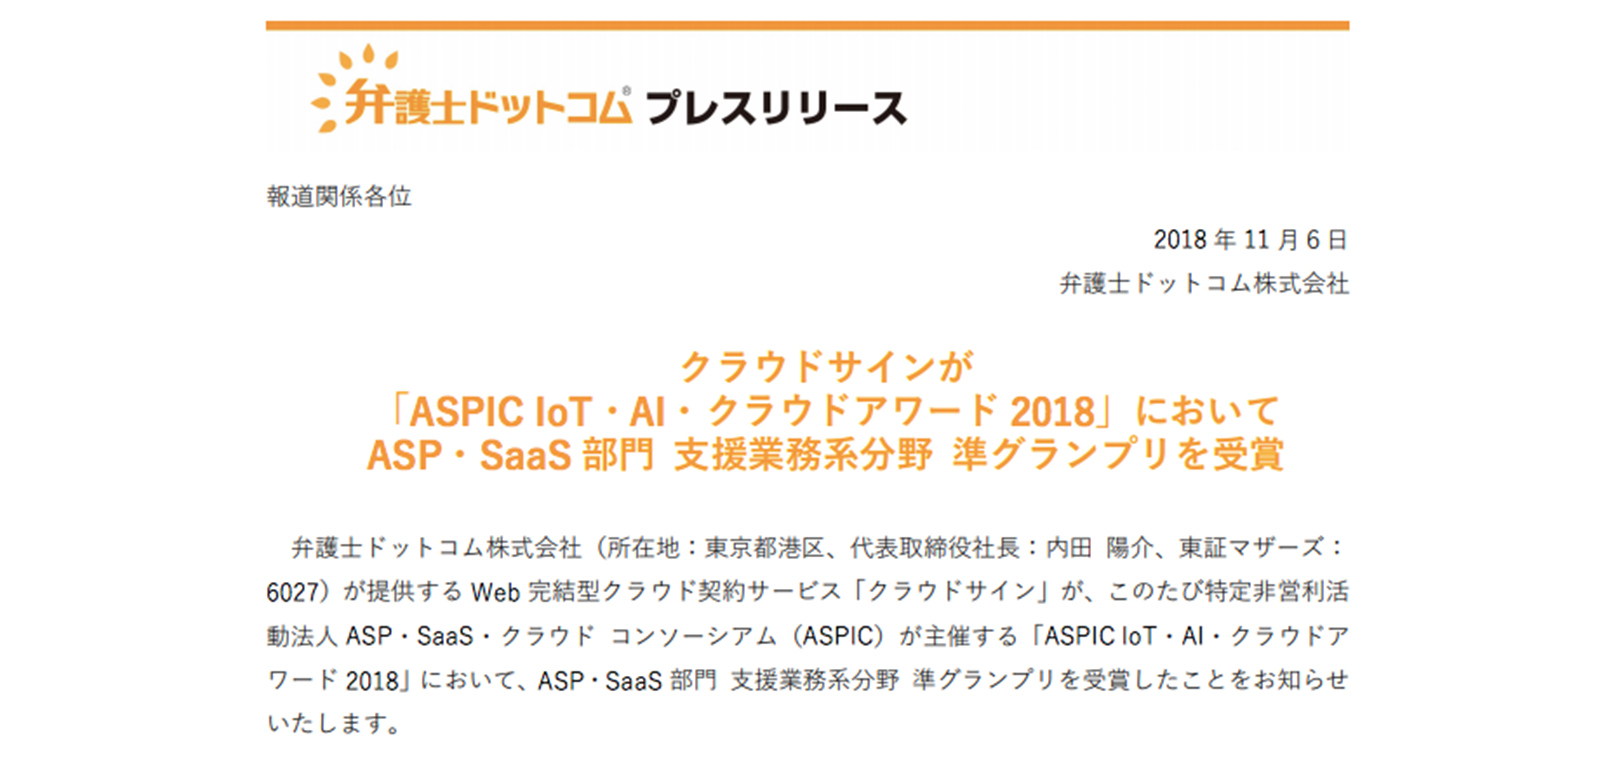 総務省後援「ASPIC IoT・AI・クラウドアワード 2018」支援業務系分野で準グランプリ受賞